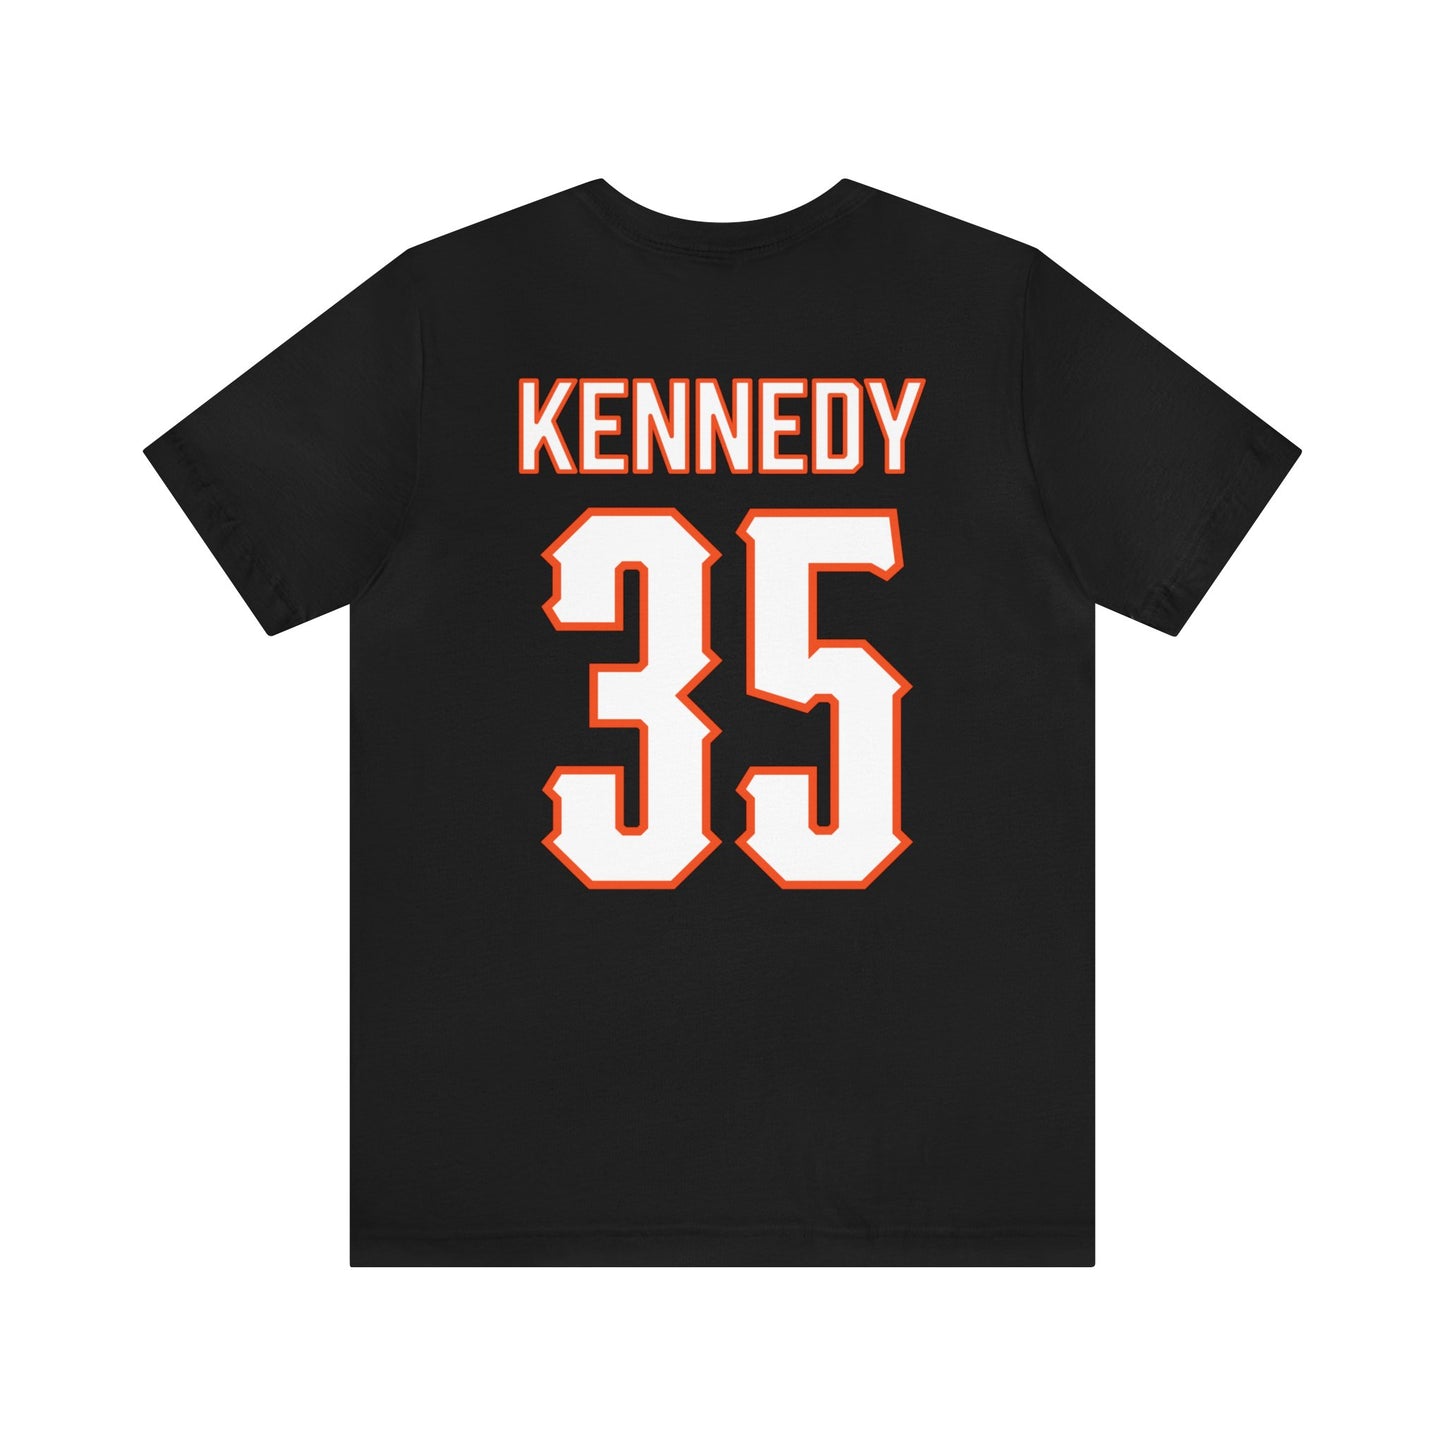 Jake Kennedy #35 Pitching Pete T-Shirt